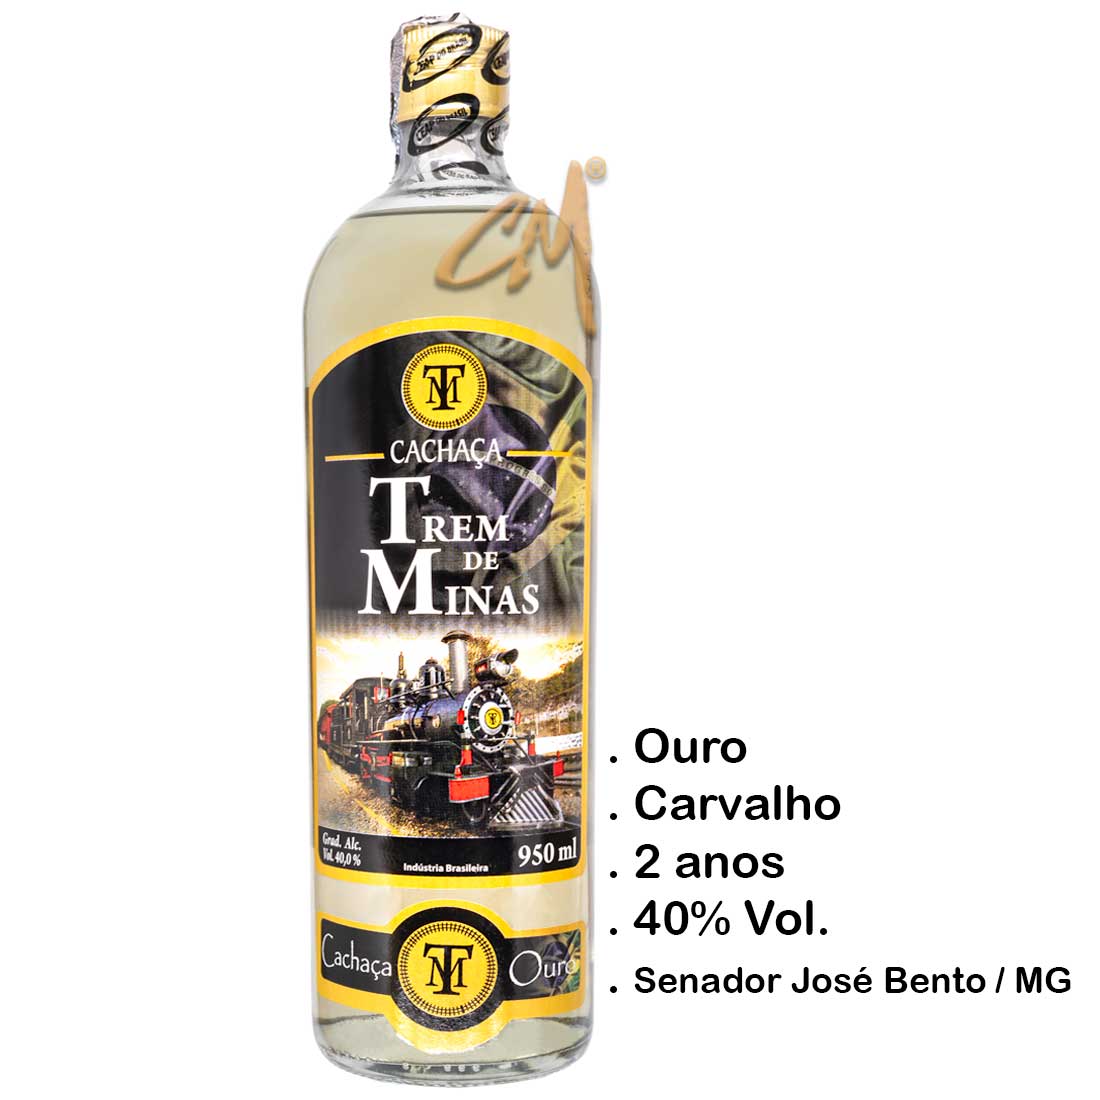 Cachaça Trem de Minas Ouro 950 ml (Senador José Bento - MG)